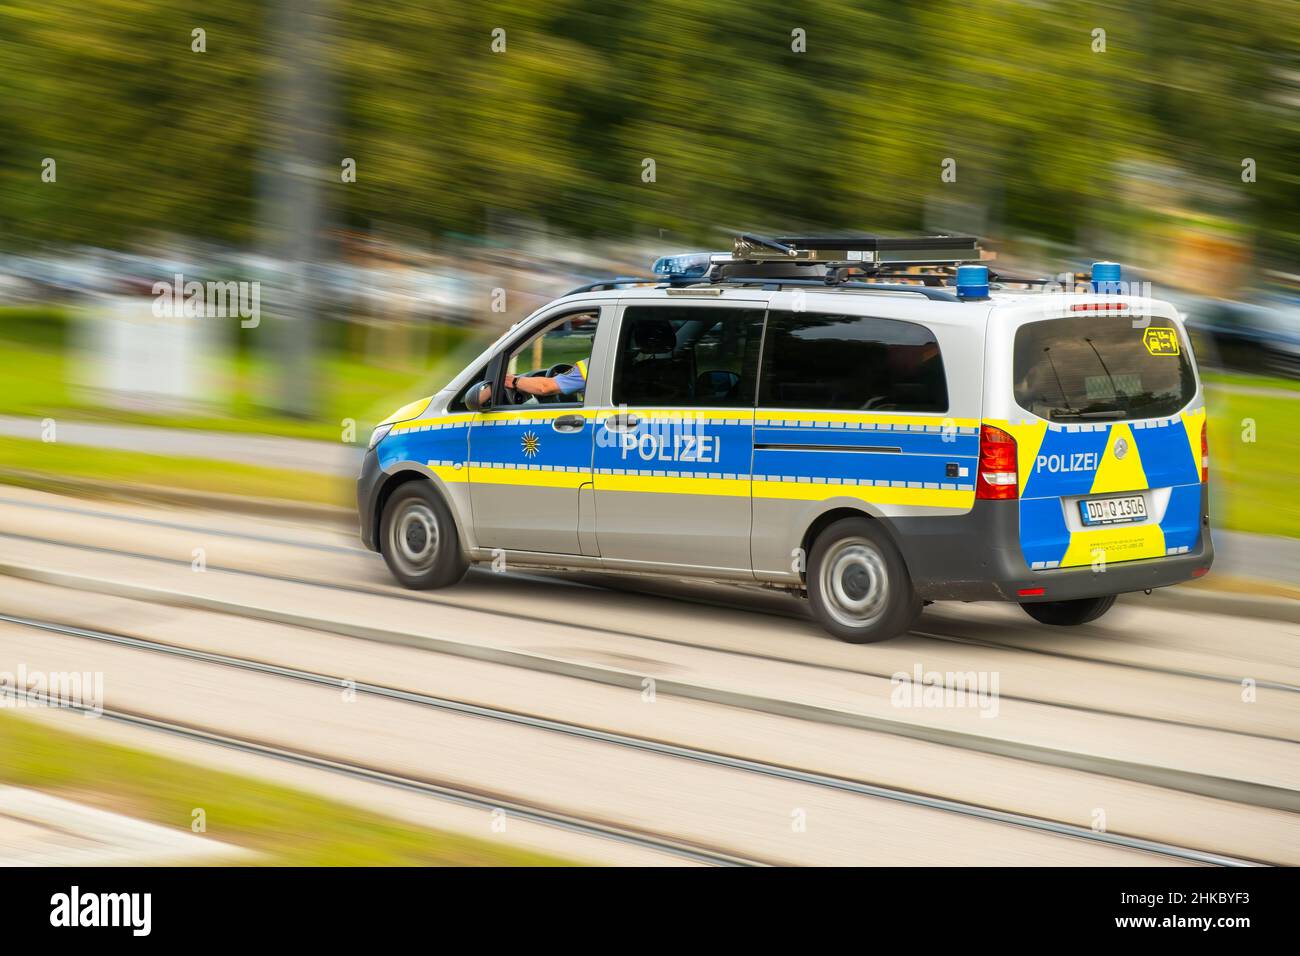 Voiture de police allemande avec des lettres Polizei conduit rapidement sur appel dans la rue.Voiture de police se précipitant sur un accident dans une rue floue, janvier 2022, Dresde, Allemagne. Banque D'Images